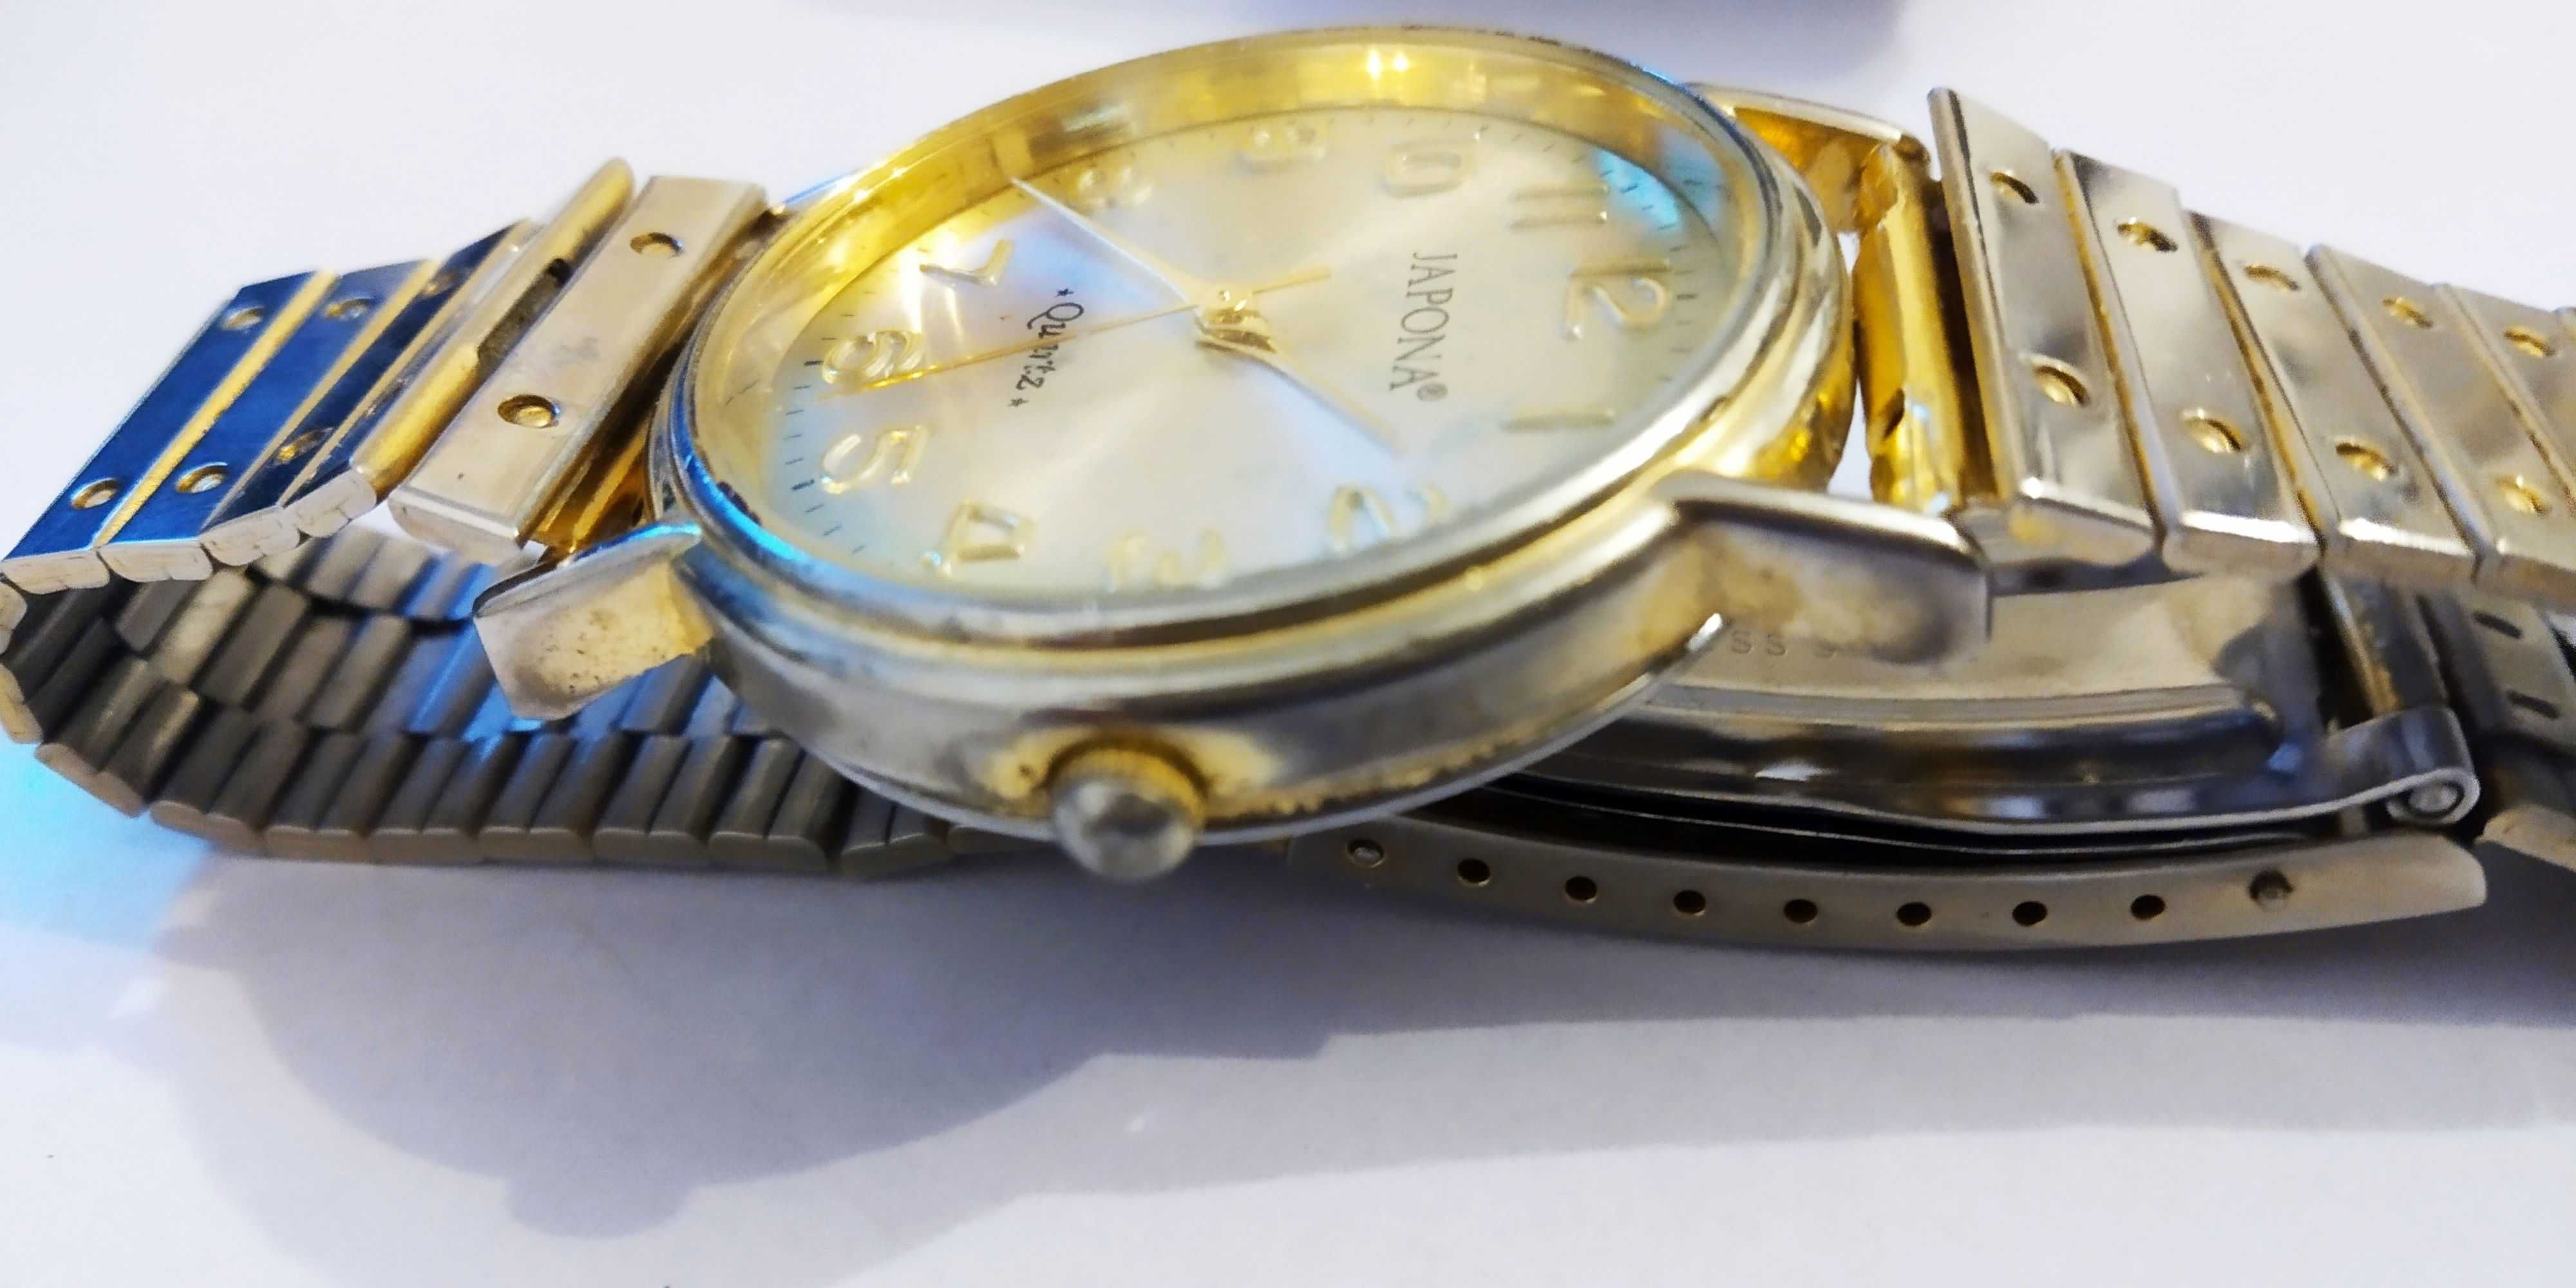 Zegarek męski Japona Quartz, złoty, elegancki